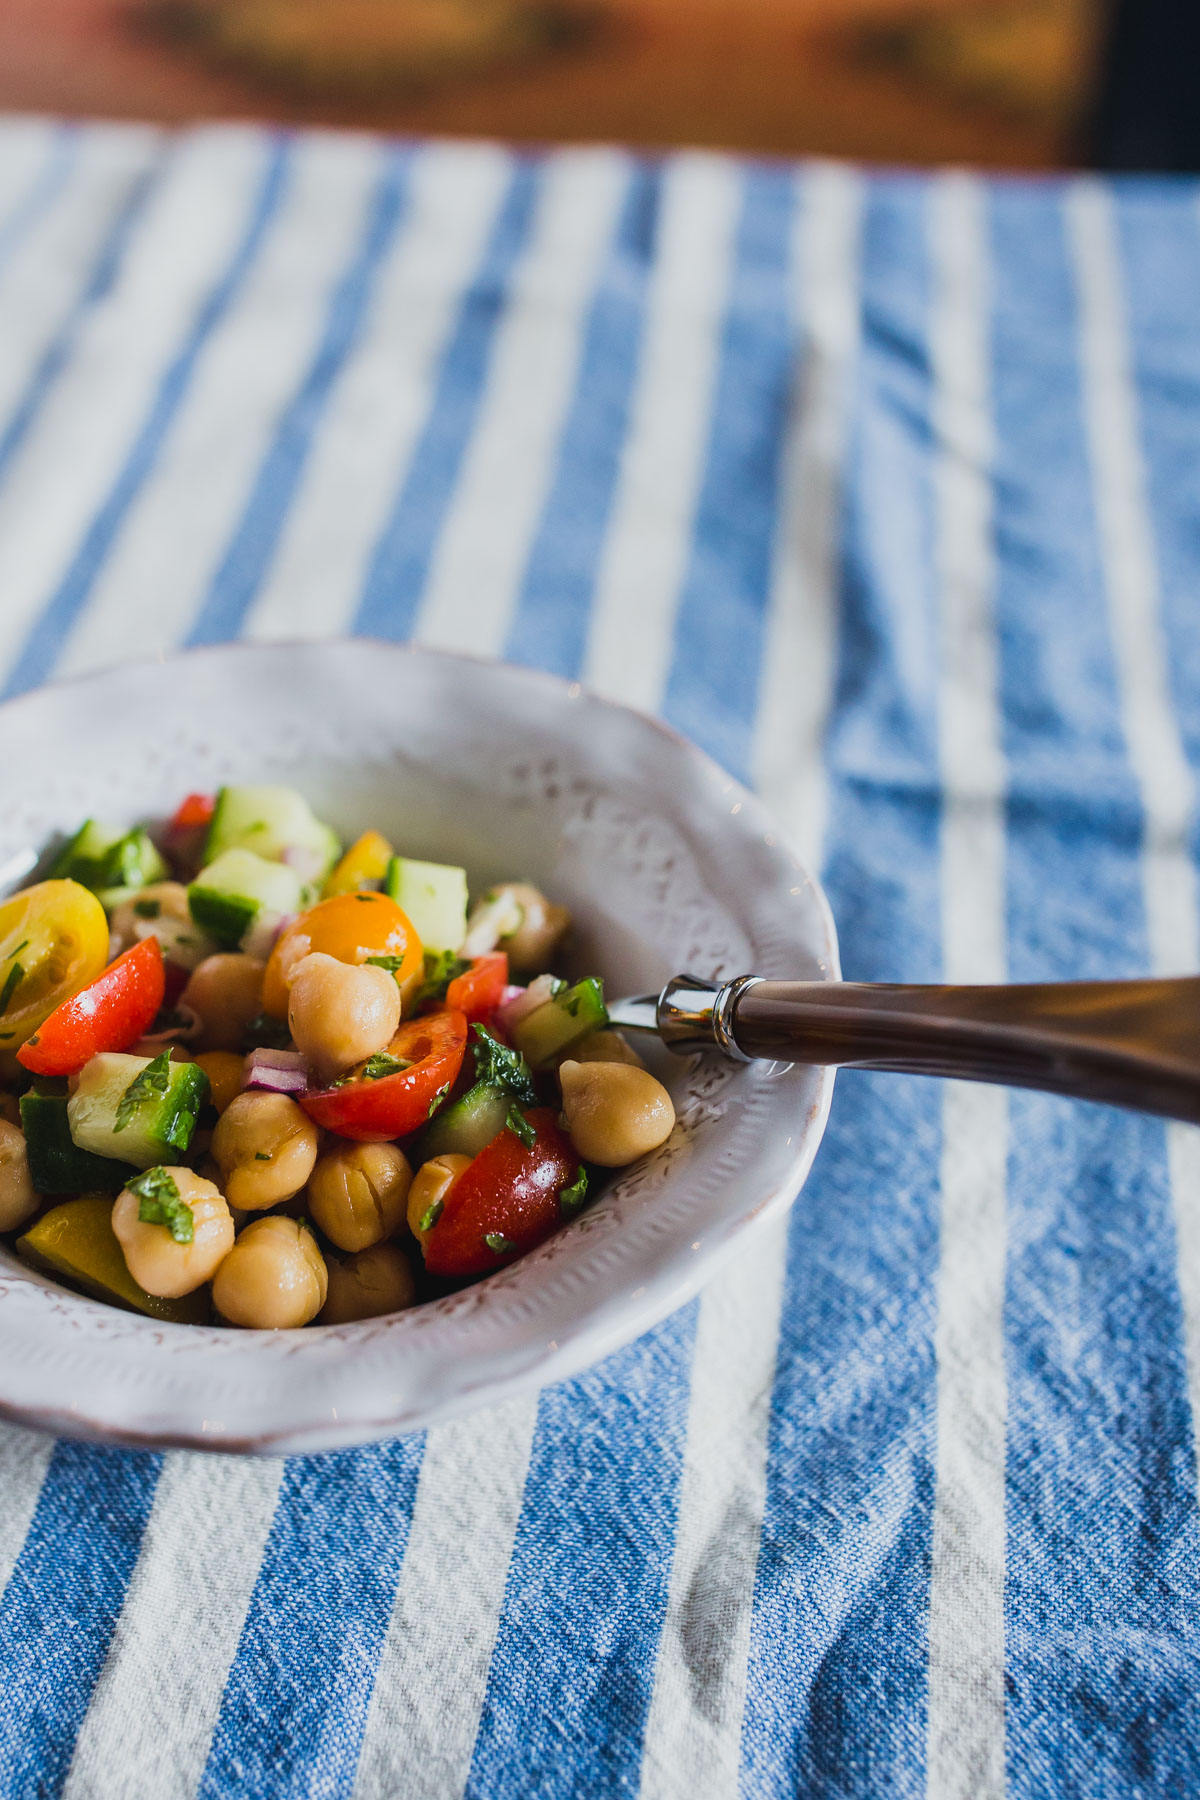 easy healthy recipes: Mediterranean Chickpea Salad